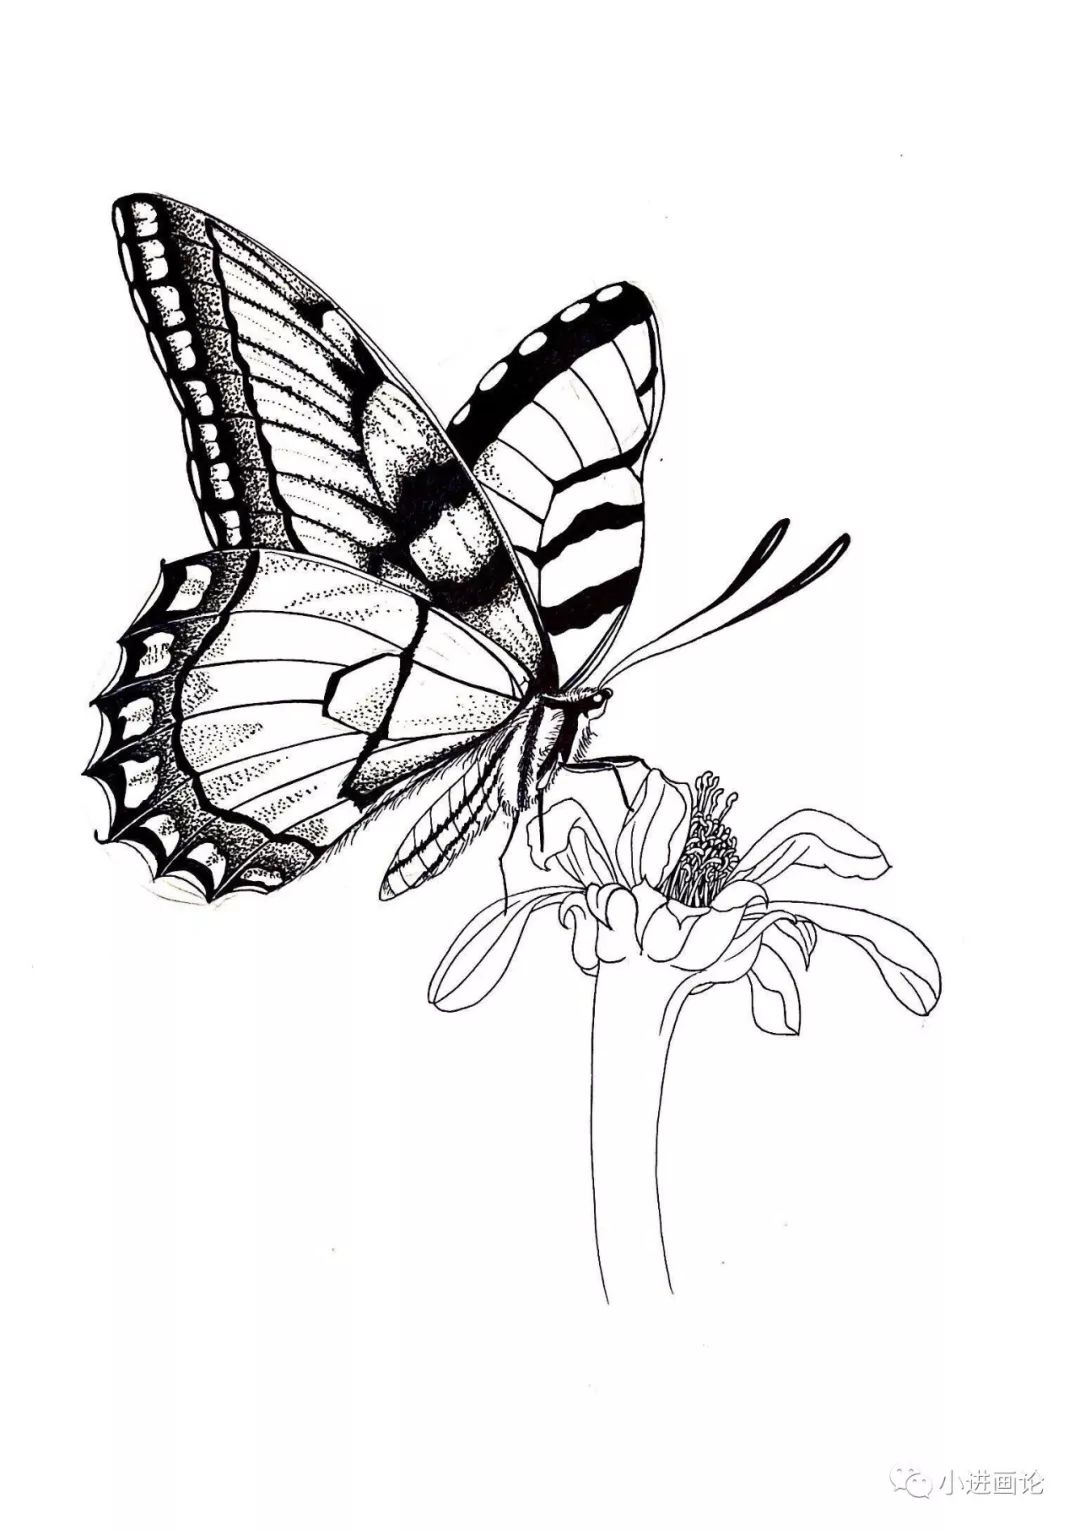 针管笔教程 | 画一只蝴蝶